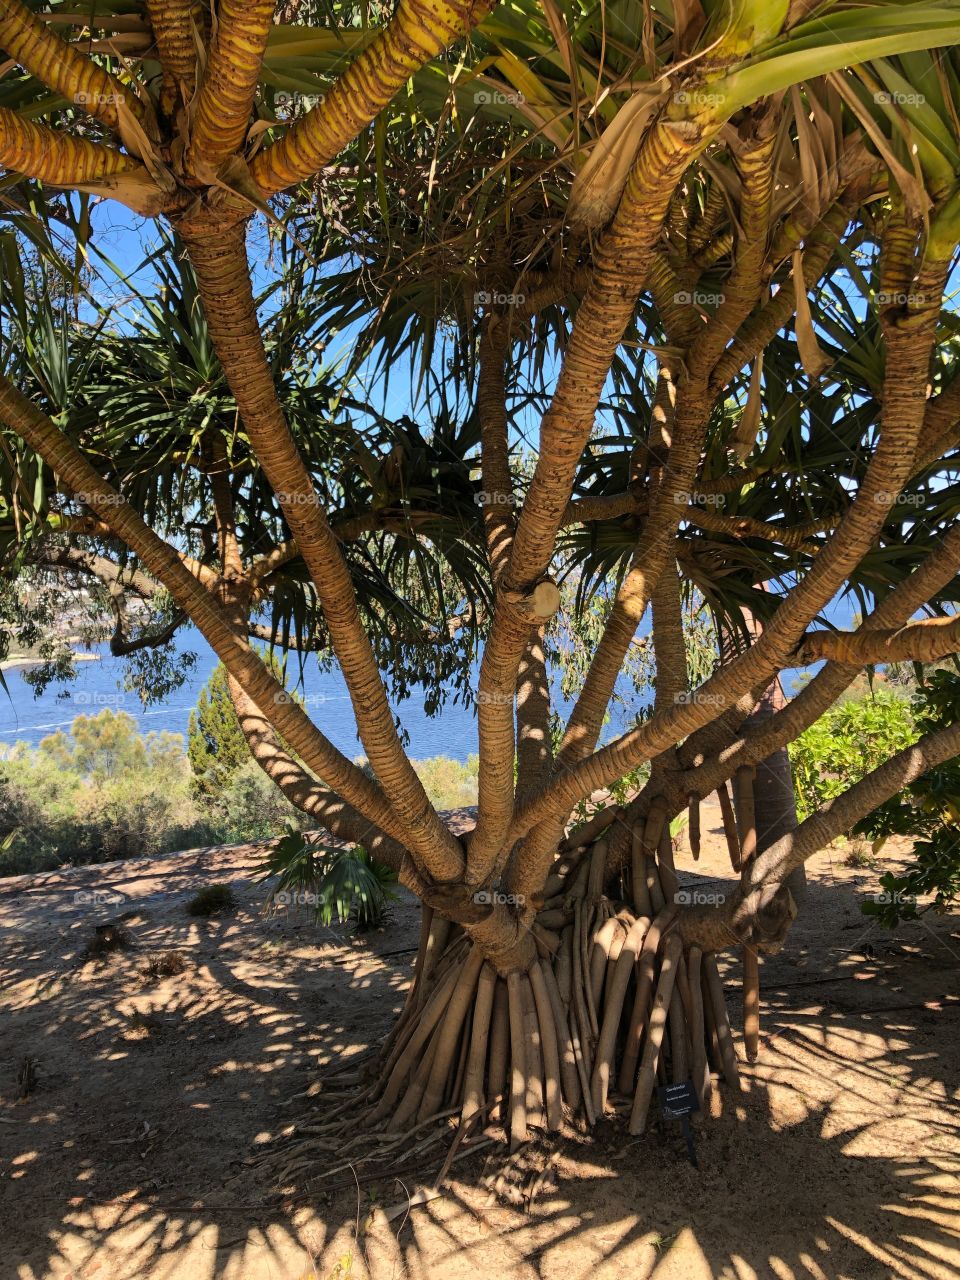 Australian native tree, Perth, Australia 